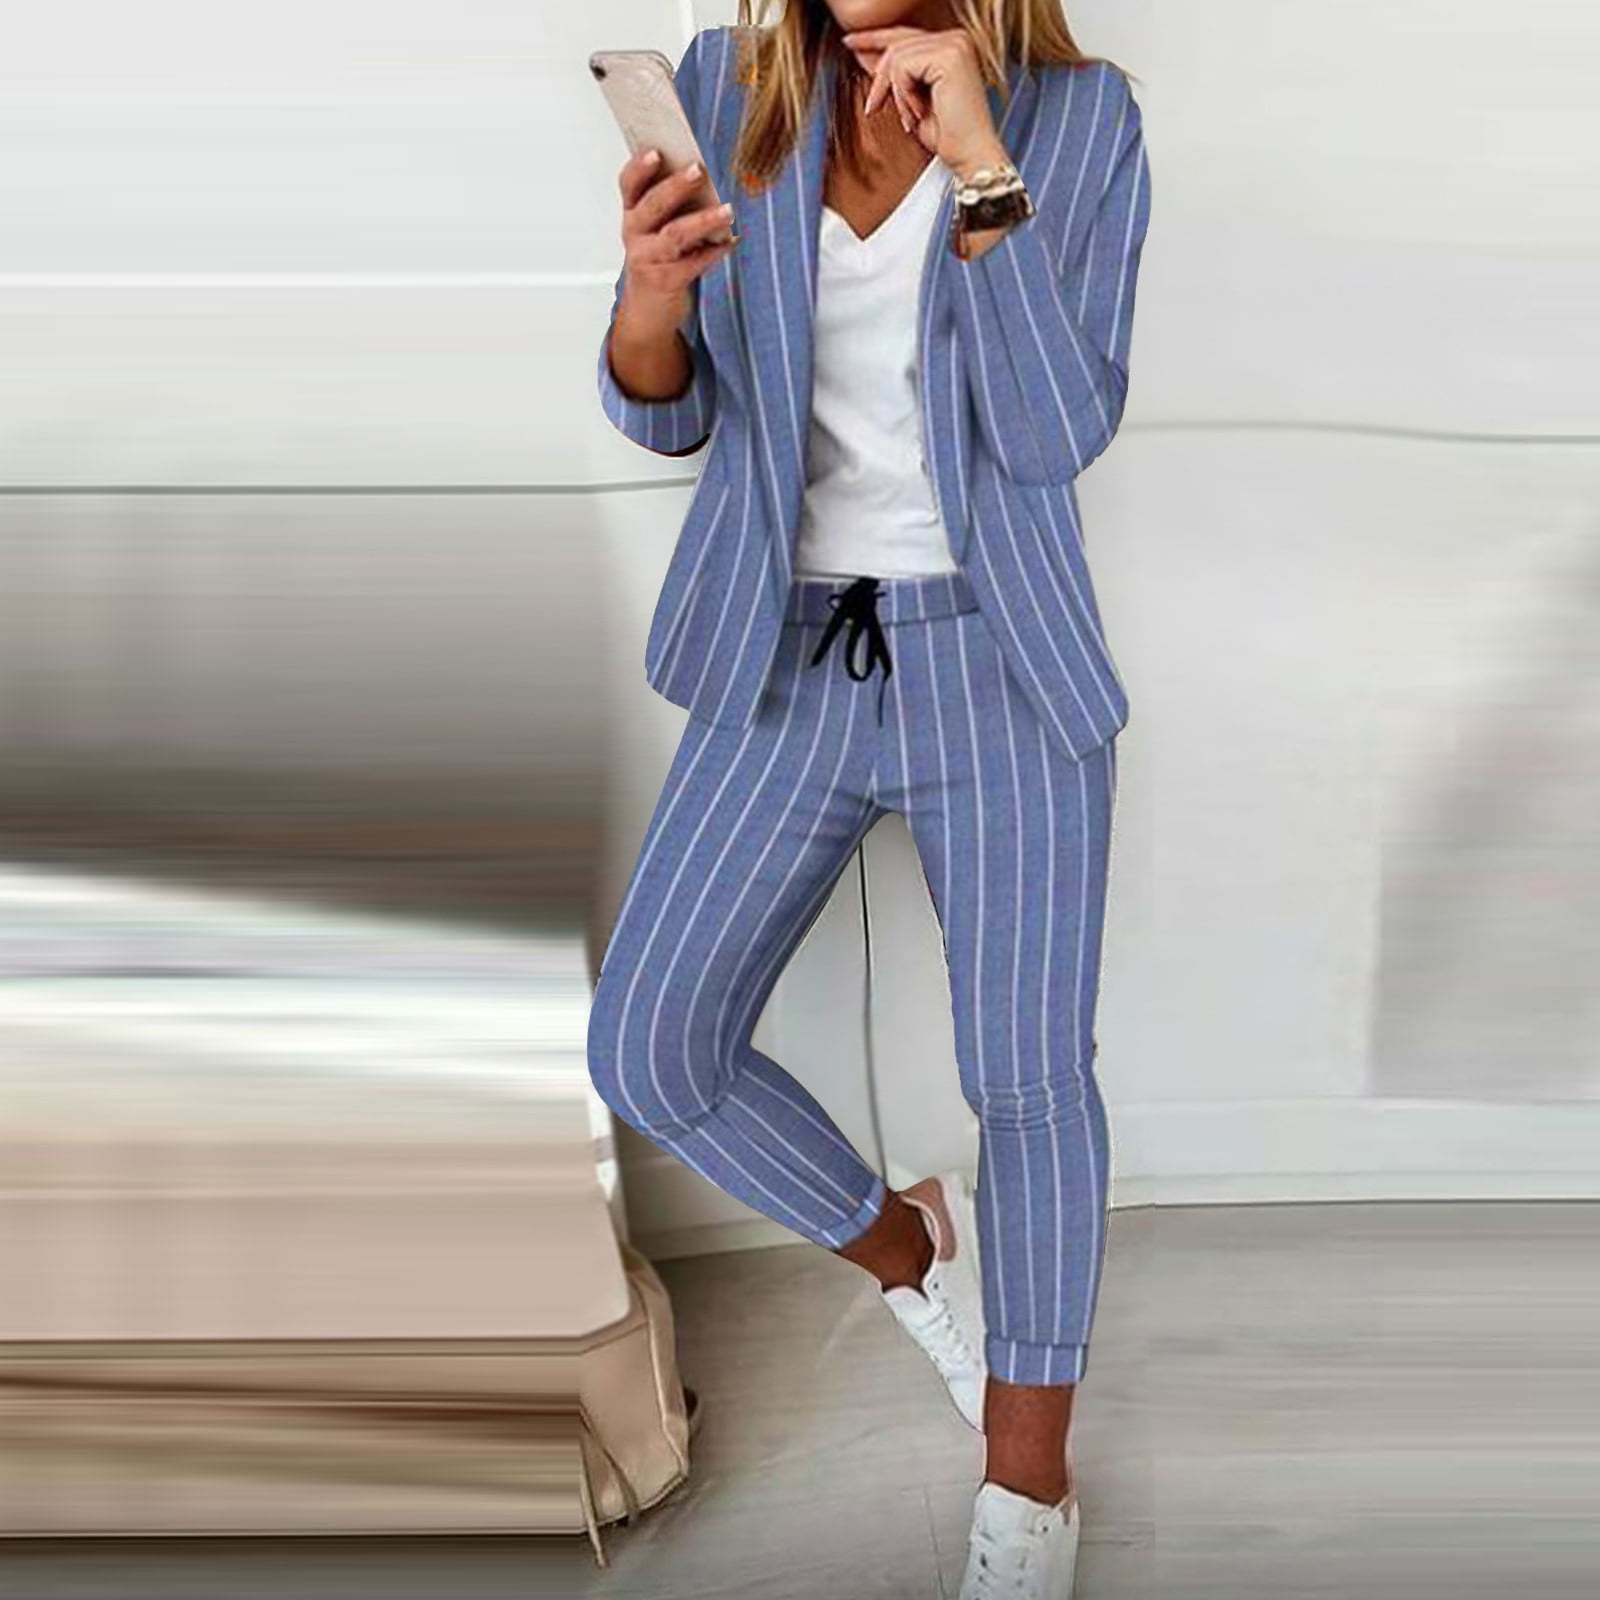 New Work Fashion Pant Suits 2 Piece Set For Women Striped Blazer Jacket  Trouser Office Business Suit Lady Suit Feminin size 5xl Color Pink